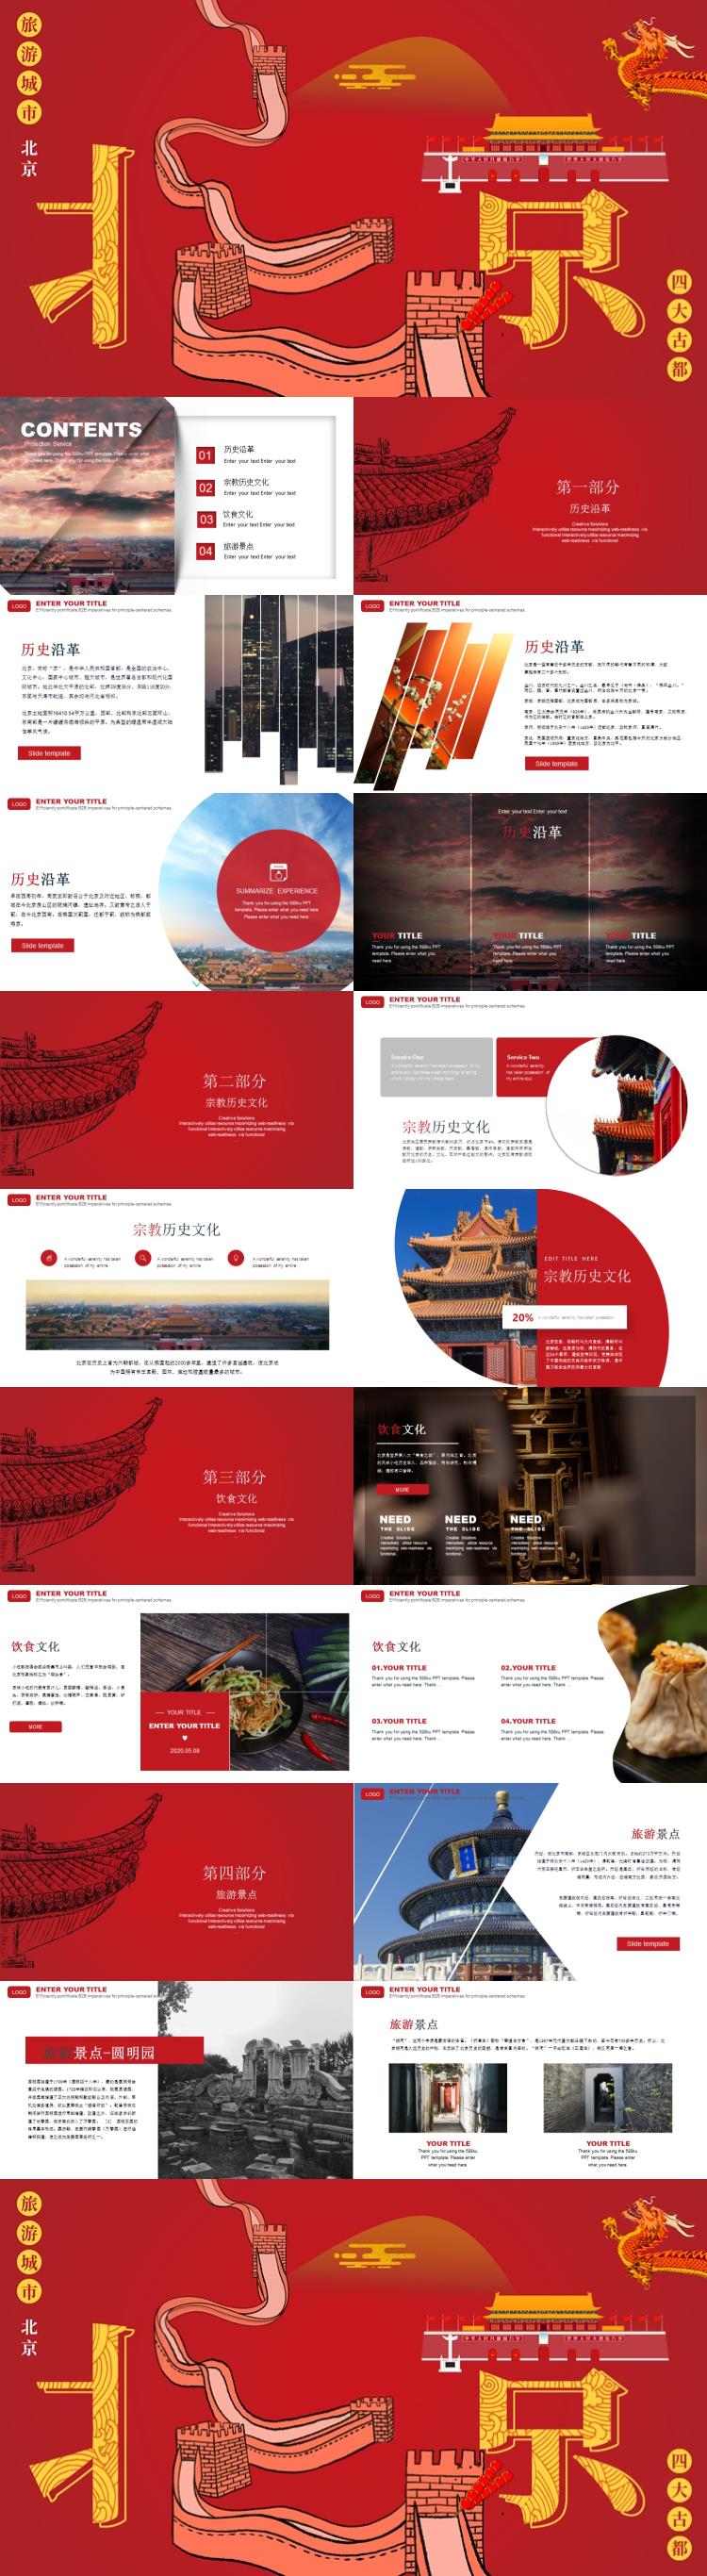 红色北京旅行文化介绍PPT模板